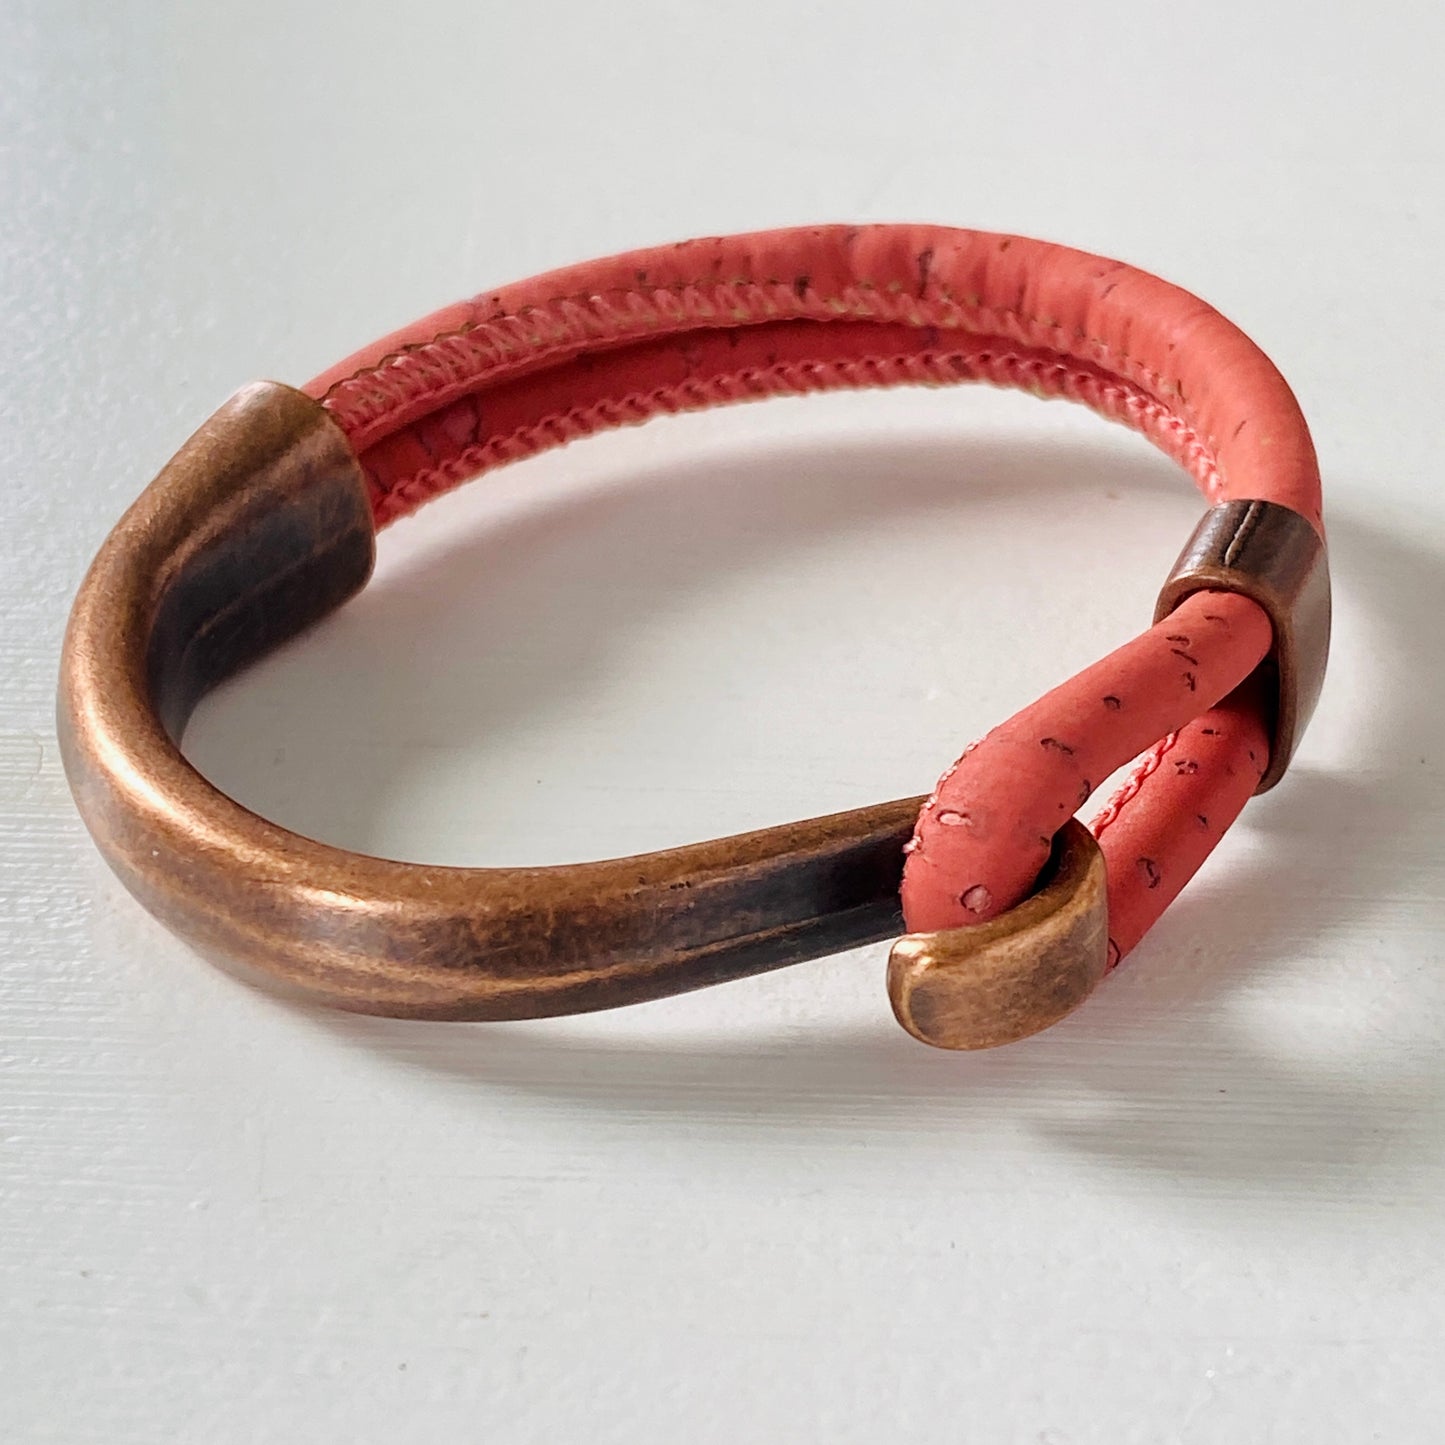 Gem Lounge Jewelry - Cork Copper Side Hook Bracelet in SMALL